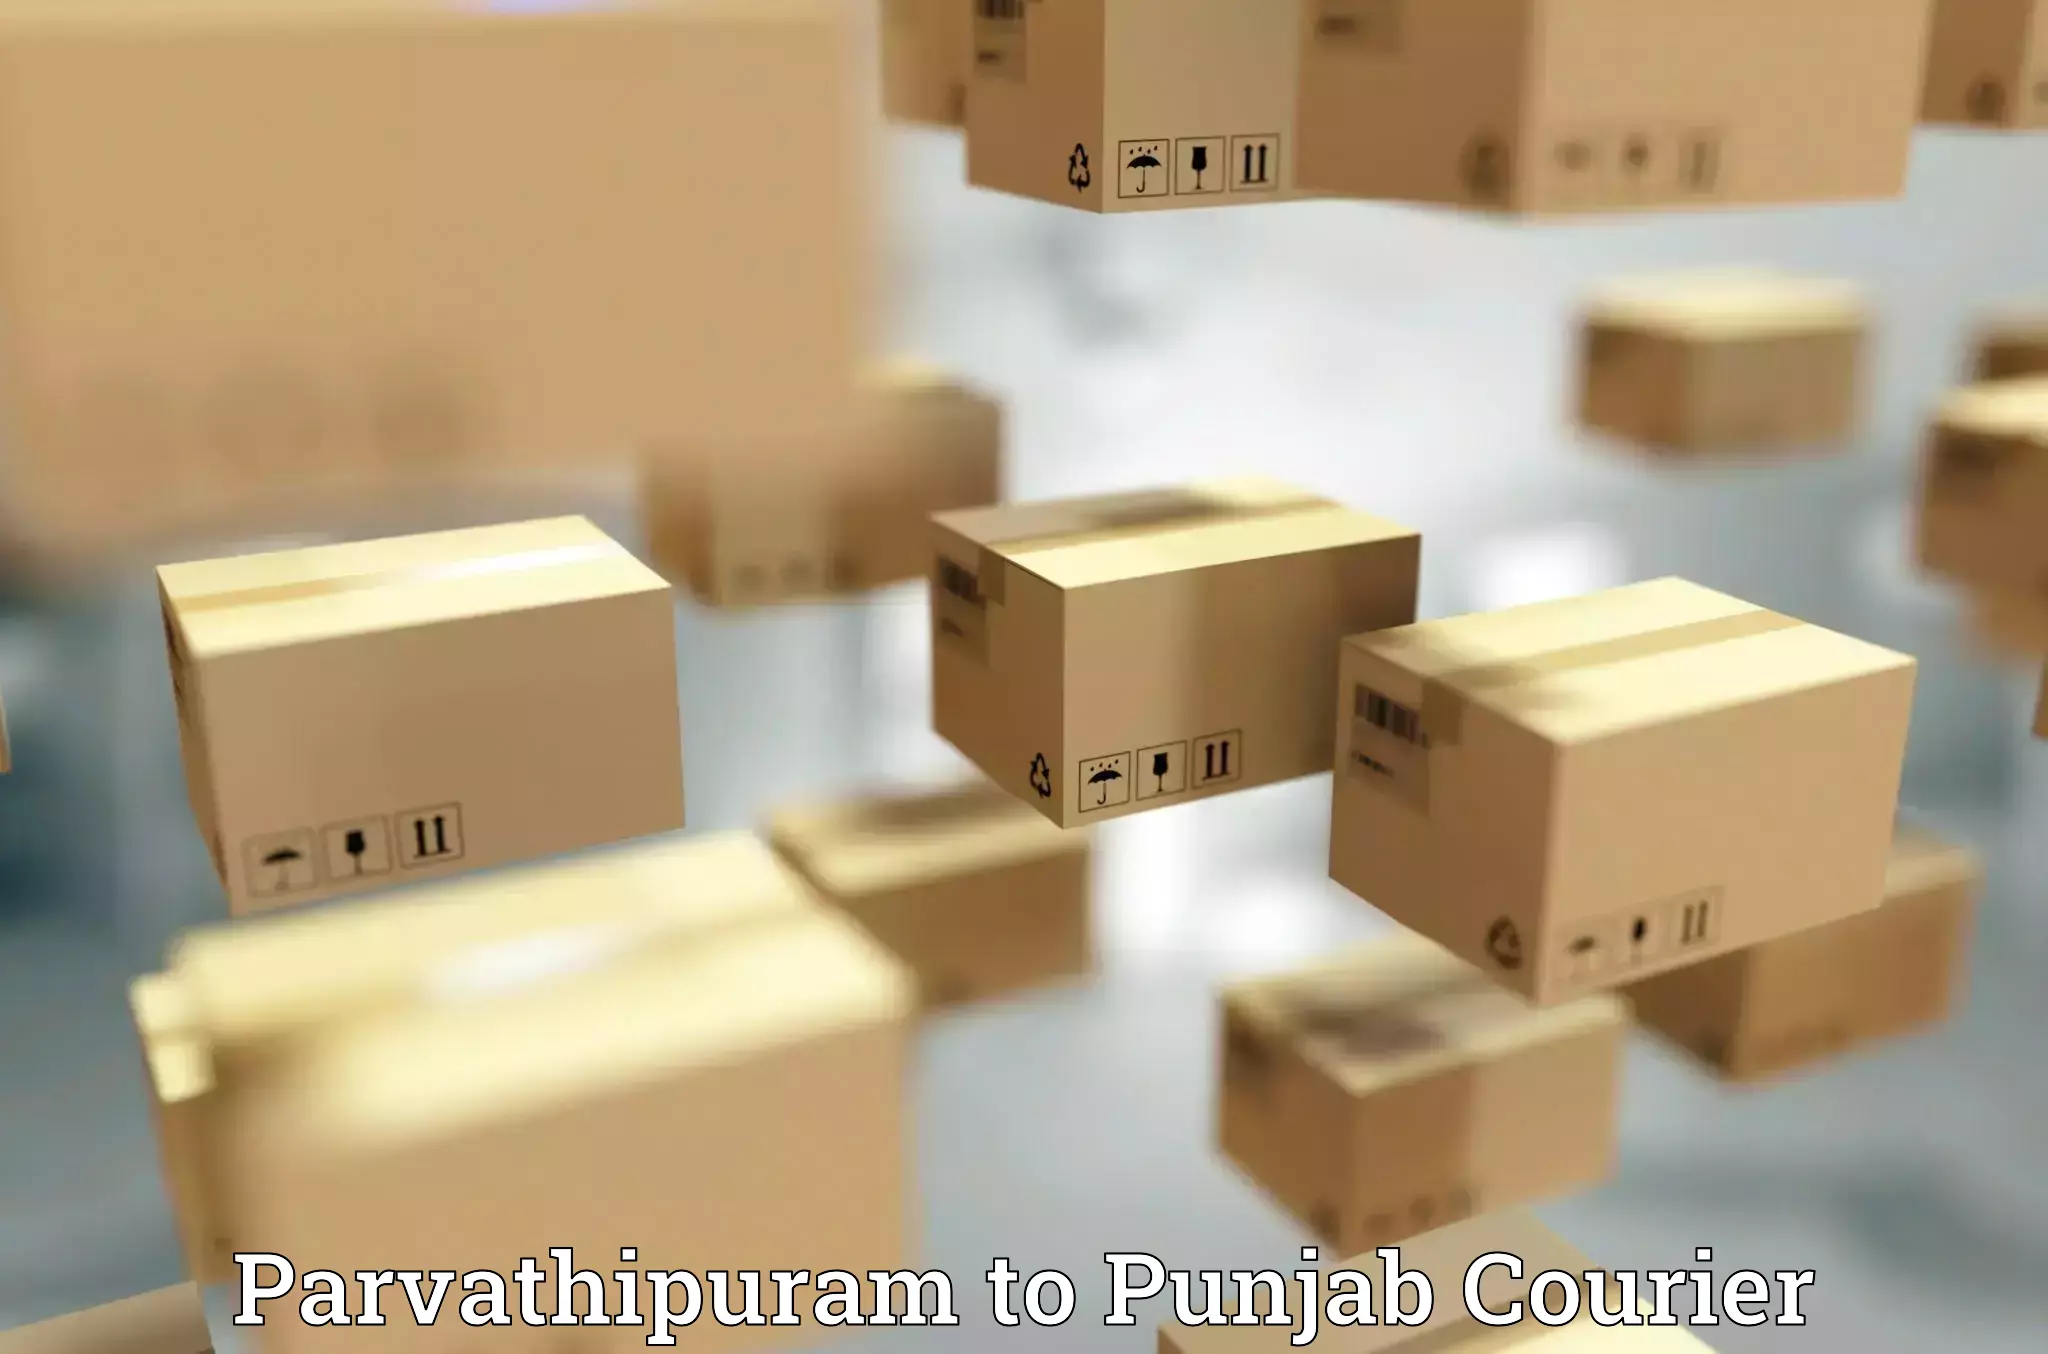 Tech-enabled shipping Parvathipuram to Punjab